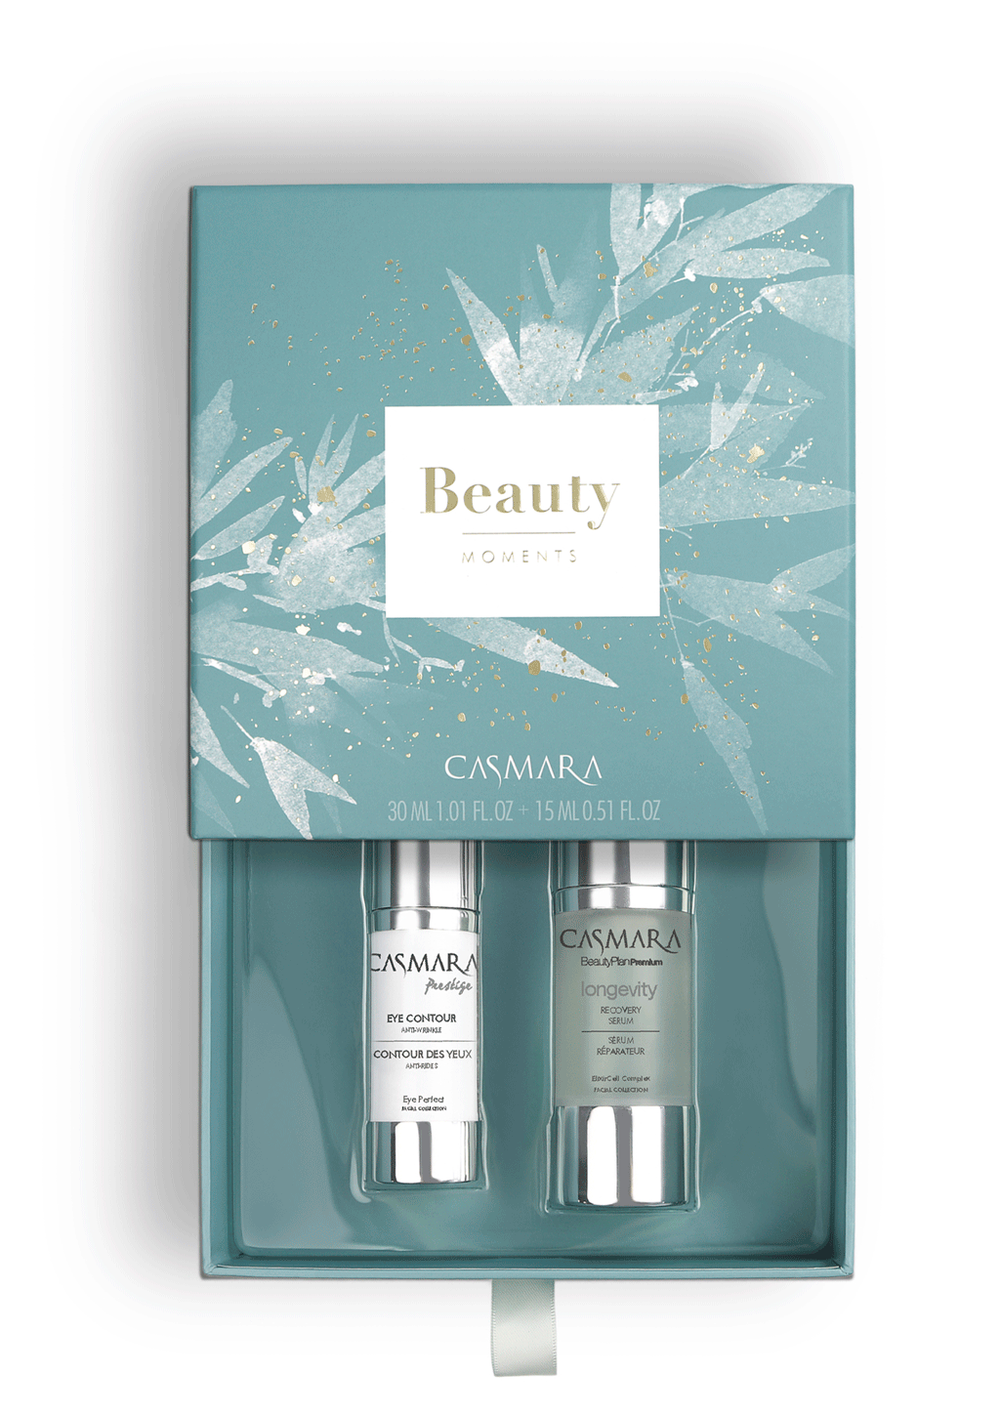 CASMARA Longevity Beauty Moments Box